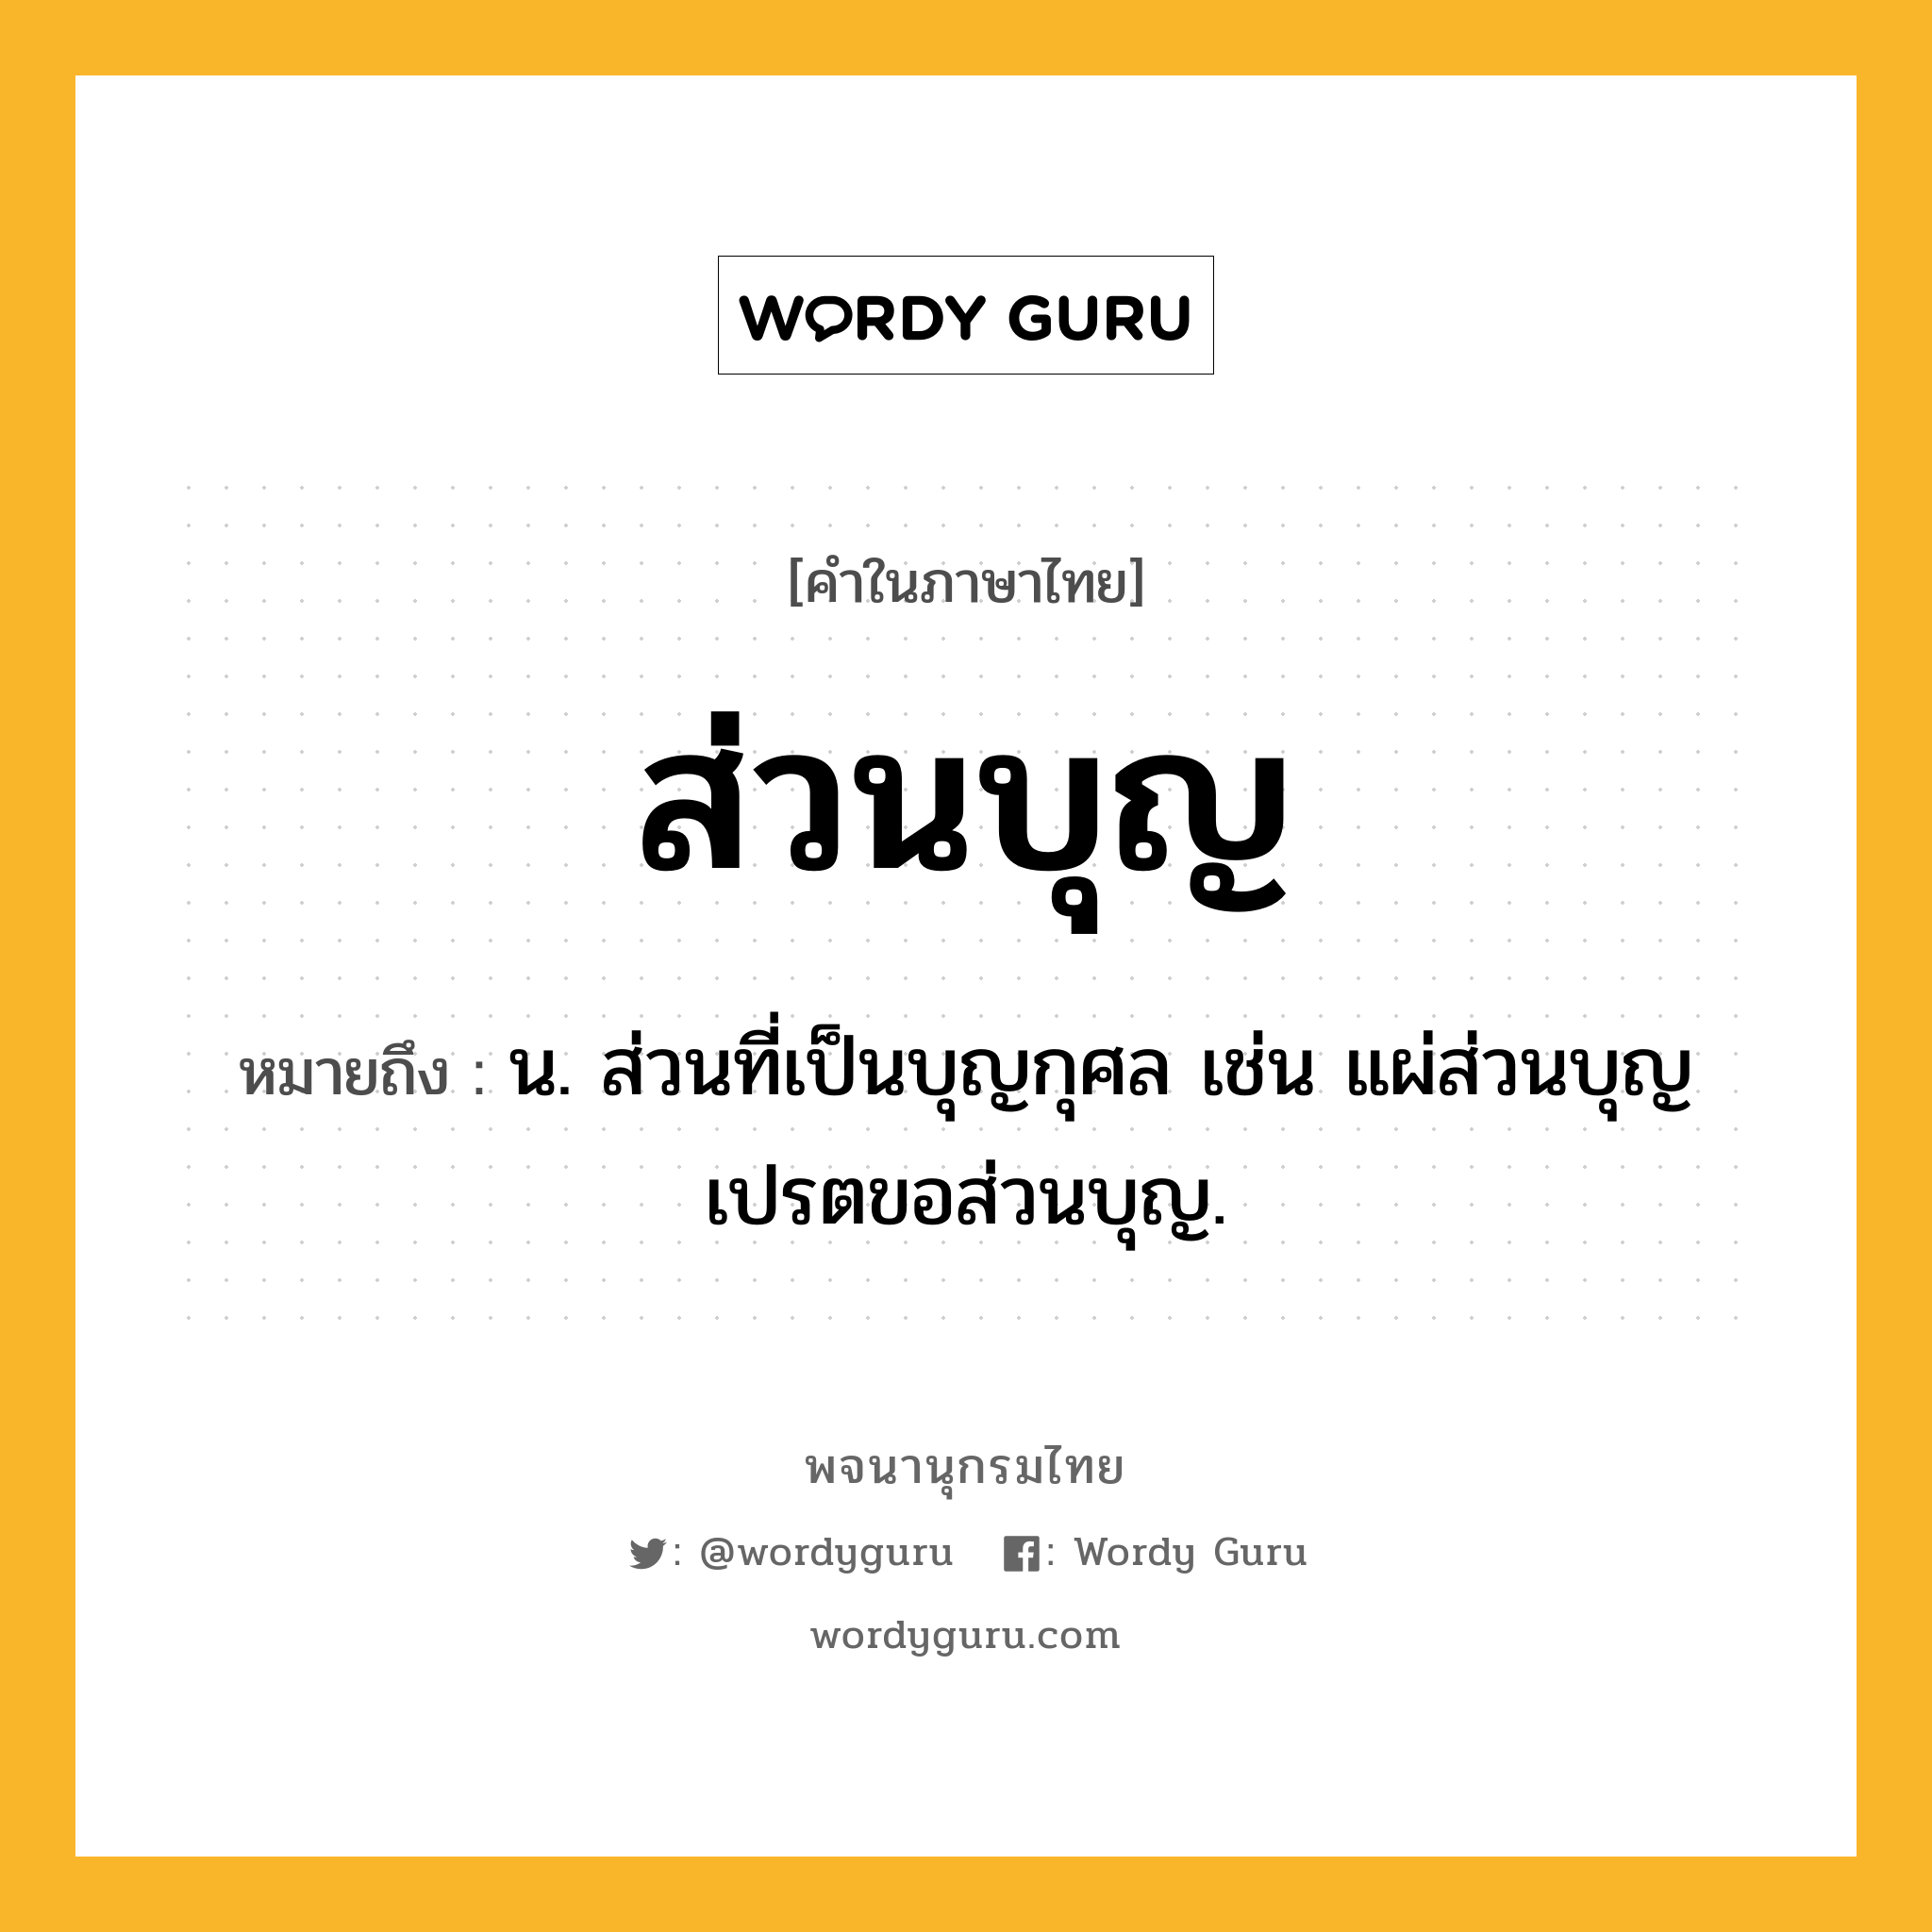 ส่วนบุญ หมายถึงอะไร?, คำในภาษาไทย ส่วนบุญ หมายถึง น. ส่วนที่เป็นบุญกุศล เช่น แผ่ส่วนบุญ เปรตขอส่วนบุญ.